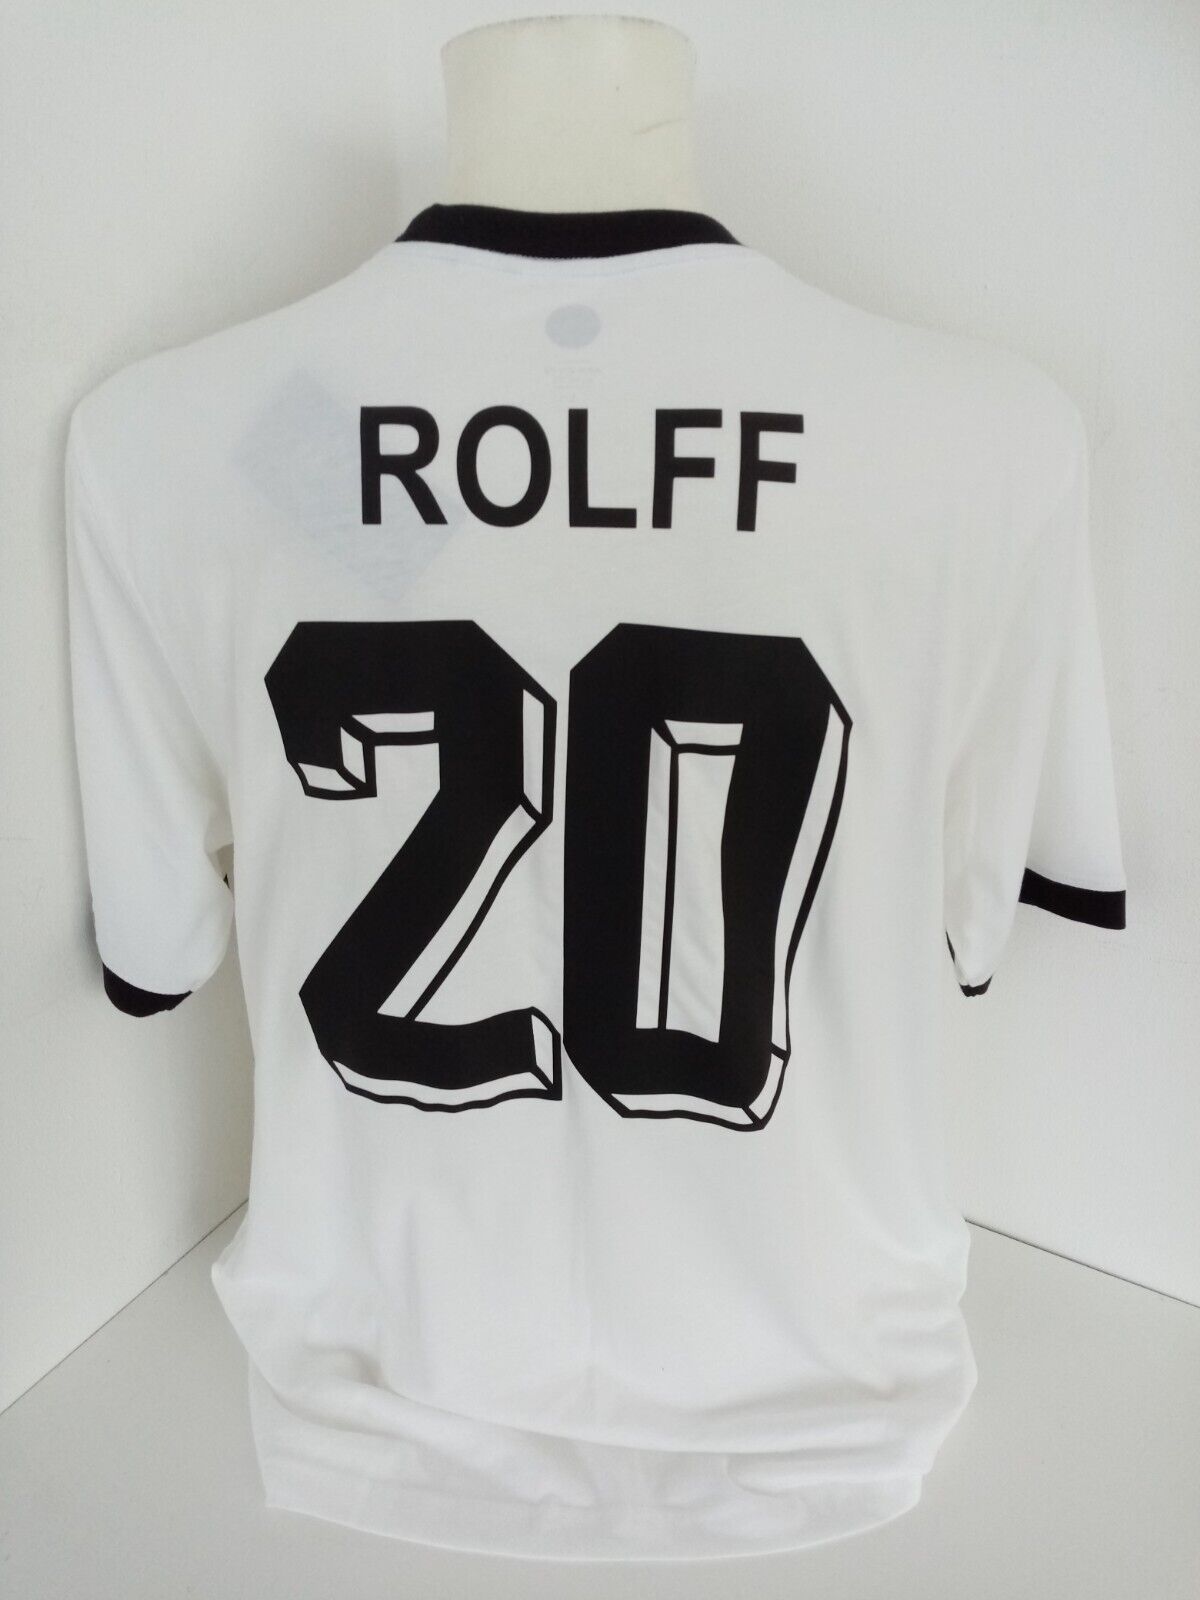 Deutschland Fantrikot Wolfgang Rolff signiert Trikot Autogramm DFB COA Fußball L